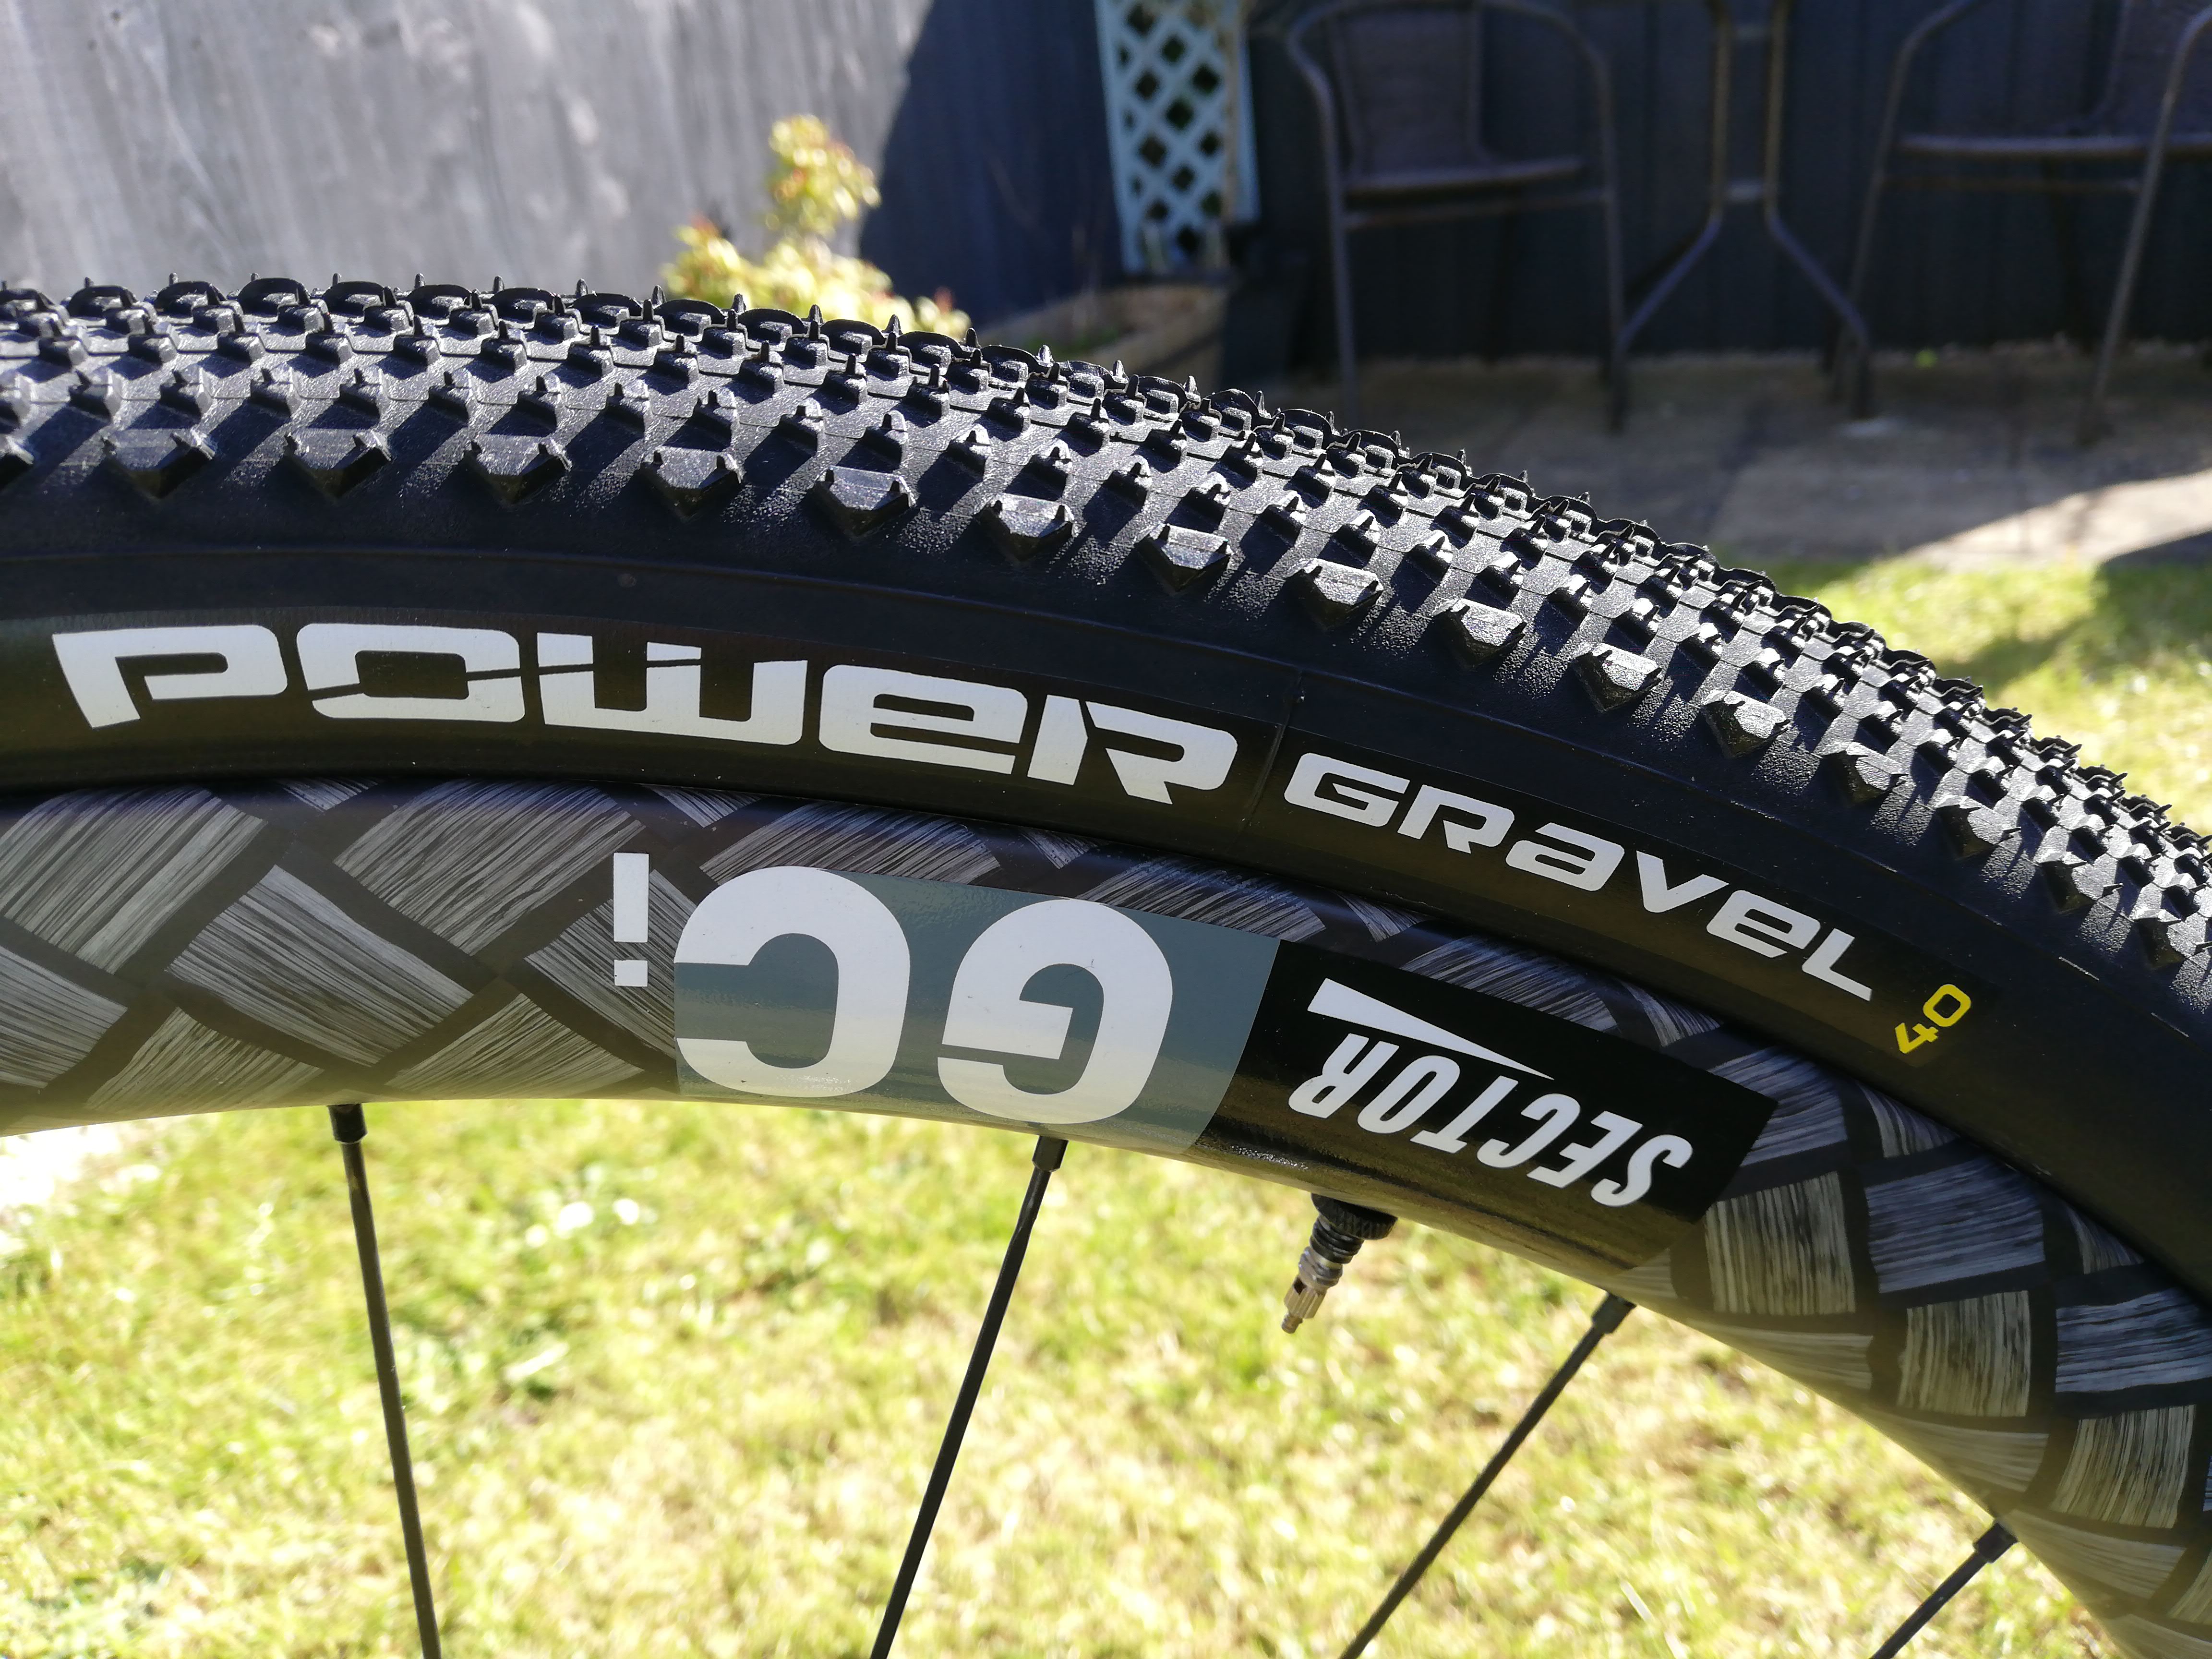 tubeless gravel tires 700c